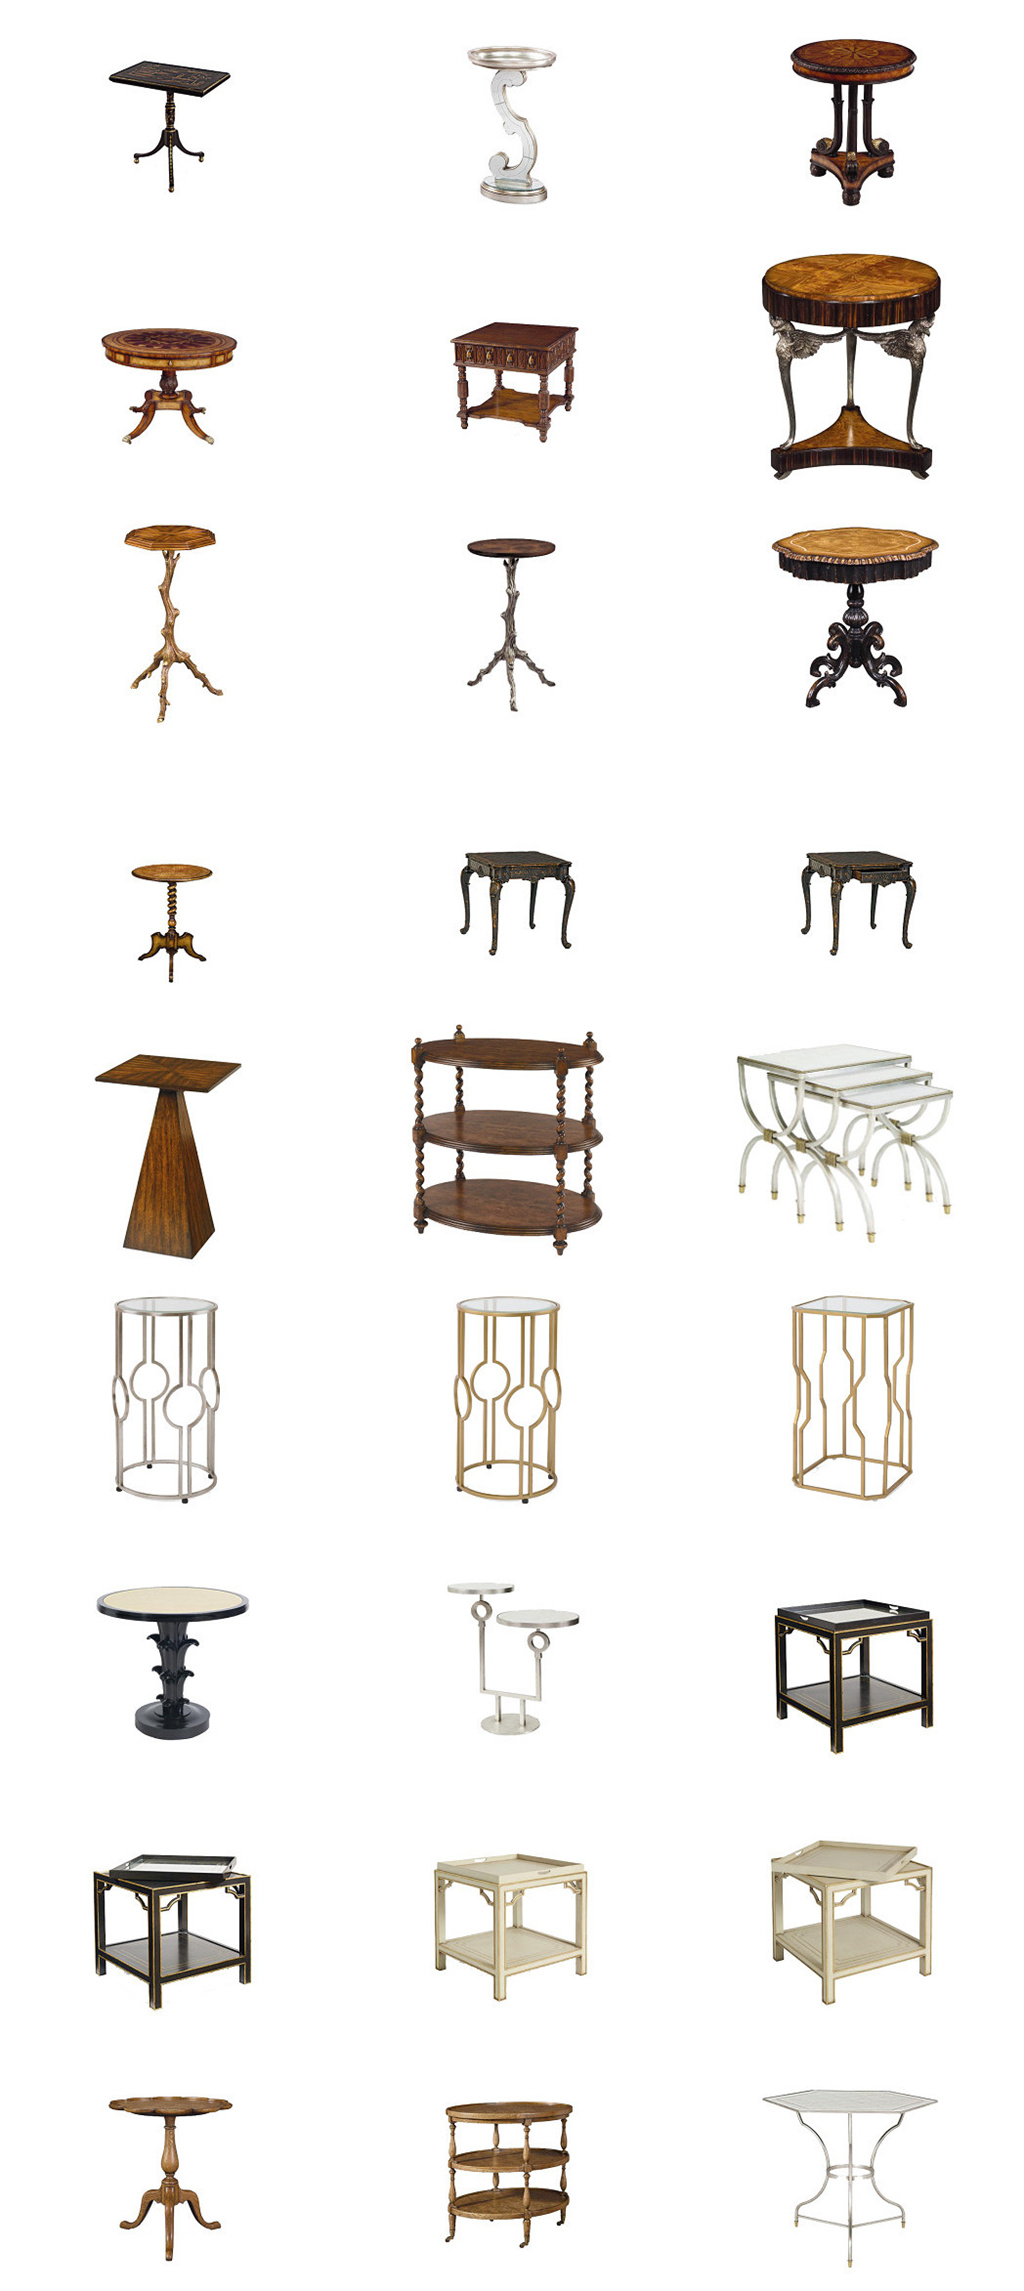 中国风椅子家具ps设计素材免抠图模板下载